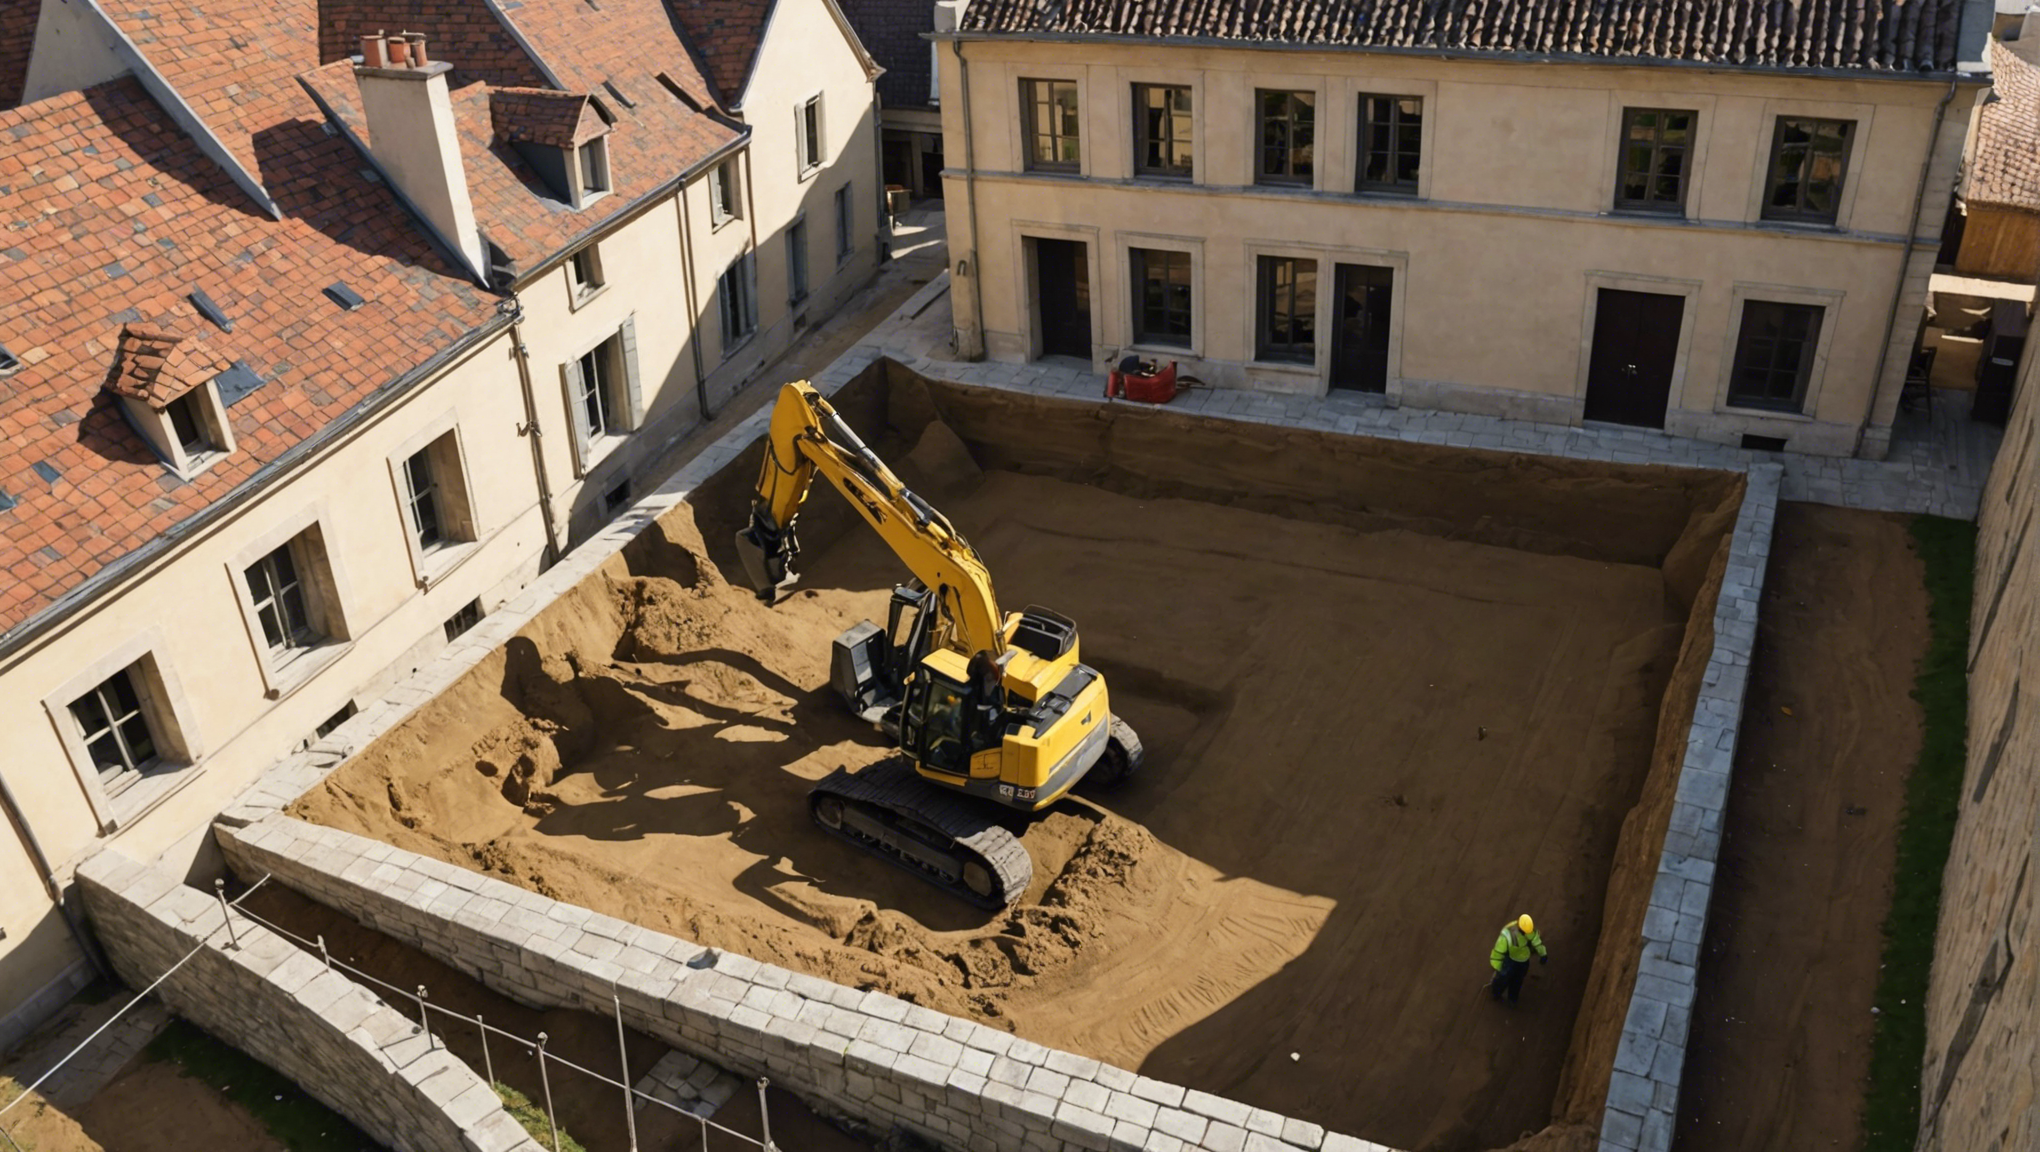 terrassement de maison à dijon : découvrez nos services de qualité pour vos travaux de terrassement dans la région de dijon.